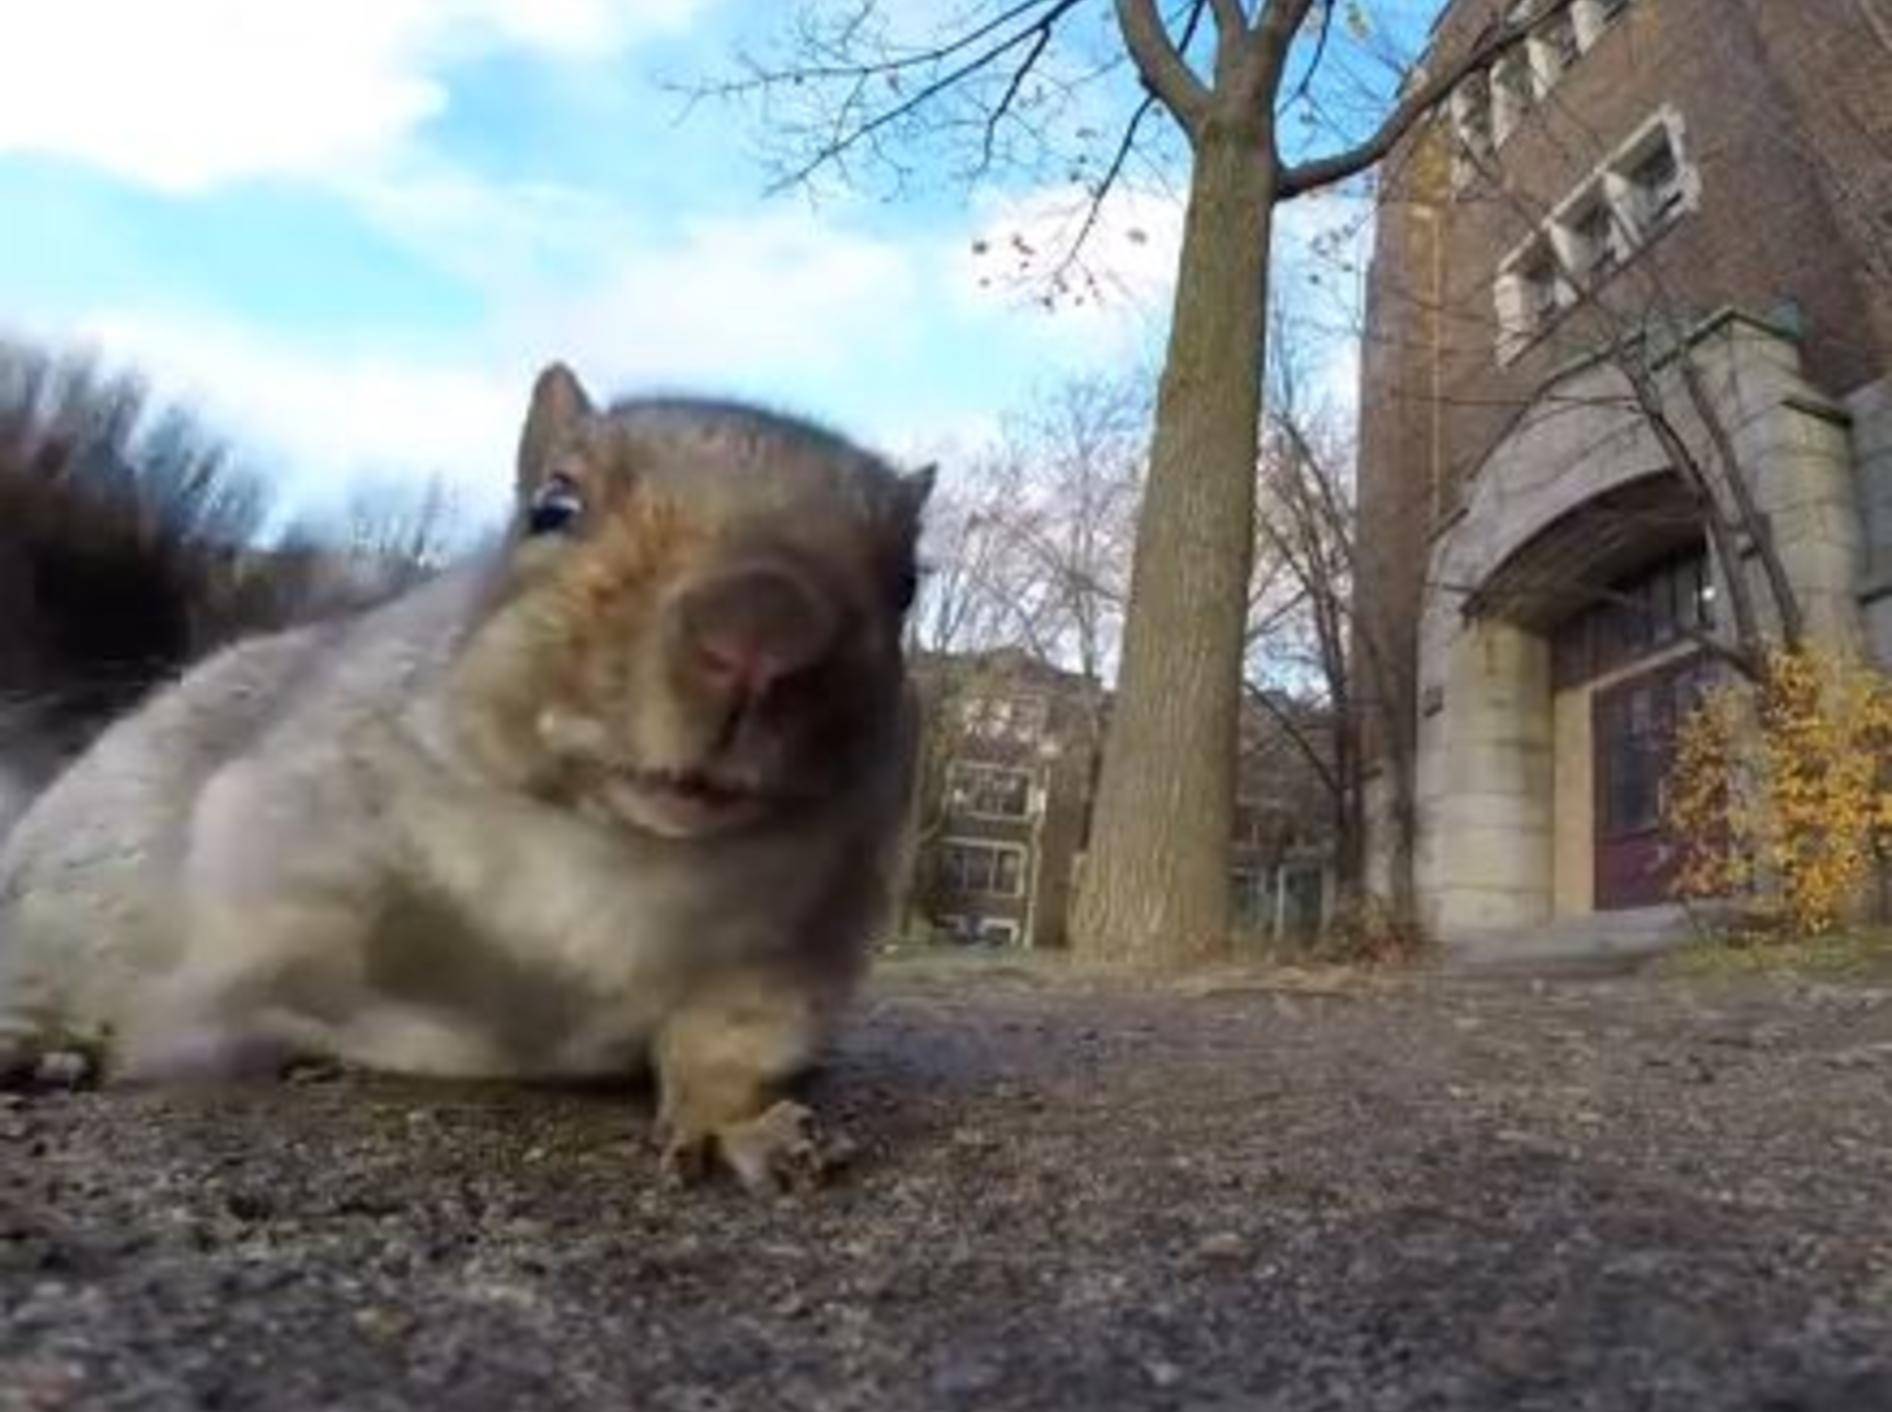 Freches Eichhörnchen: "Das ist meine Kamera!" – Bild: YouTube / Viva Frei